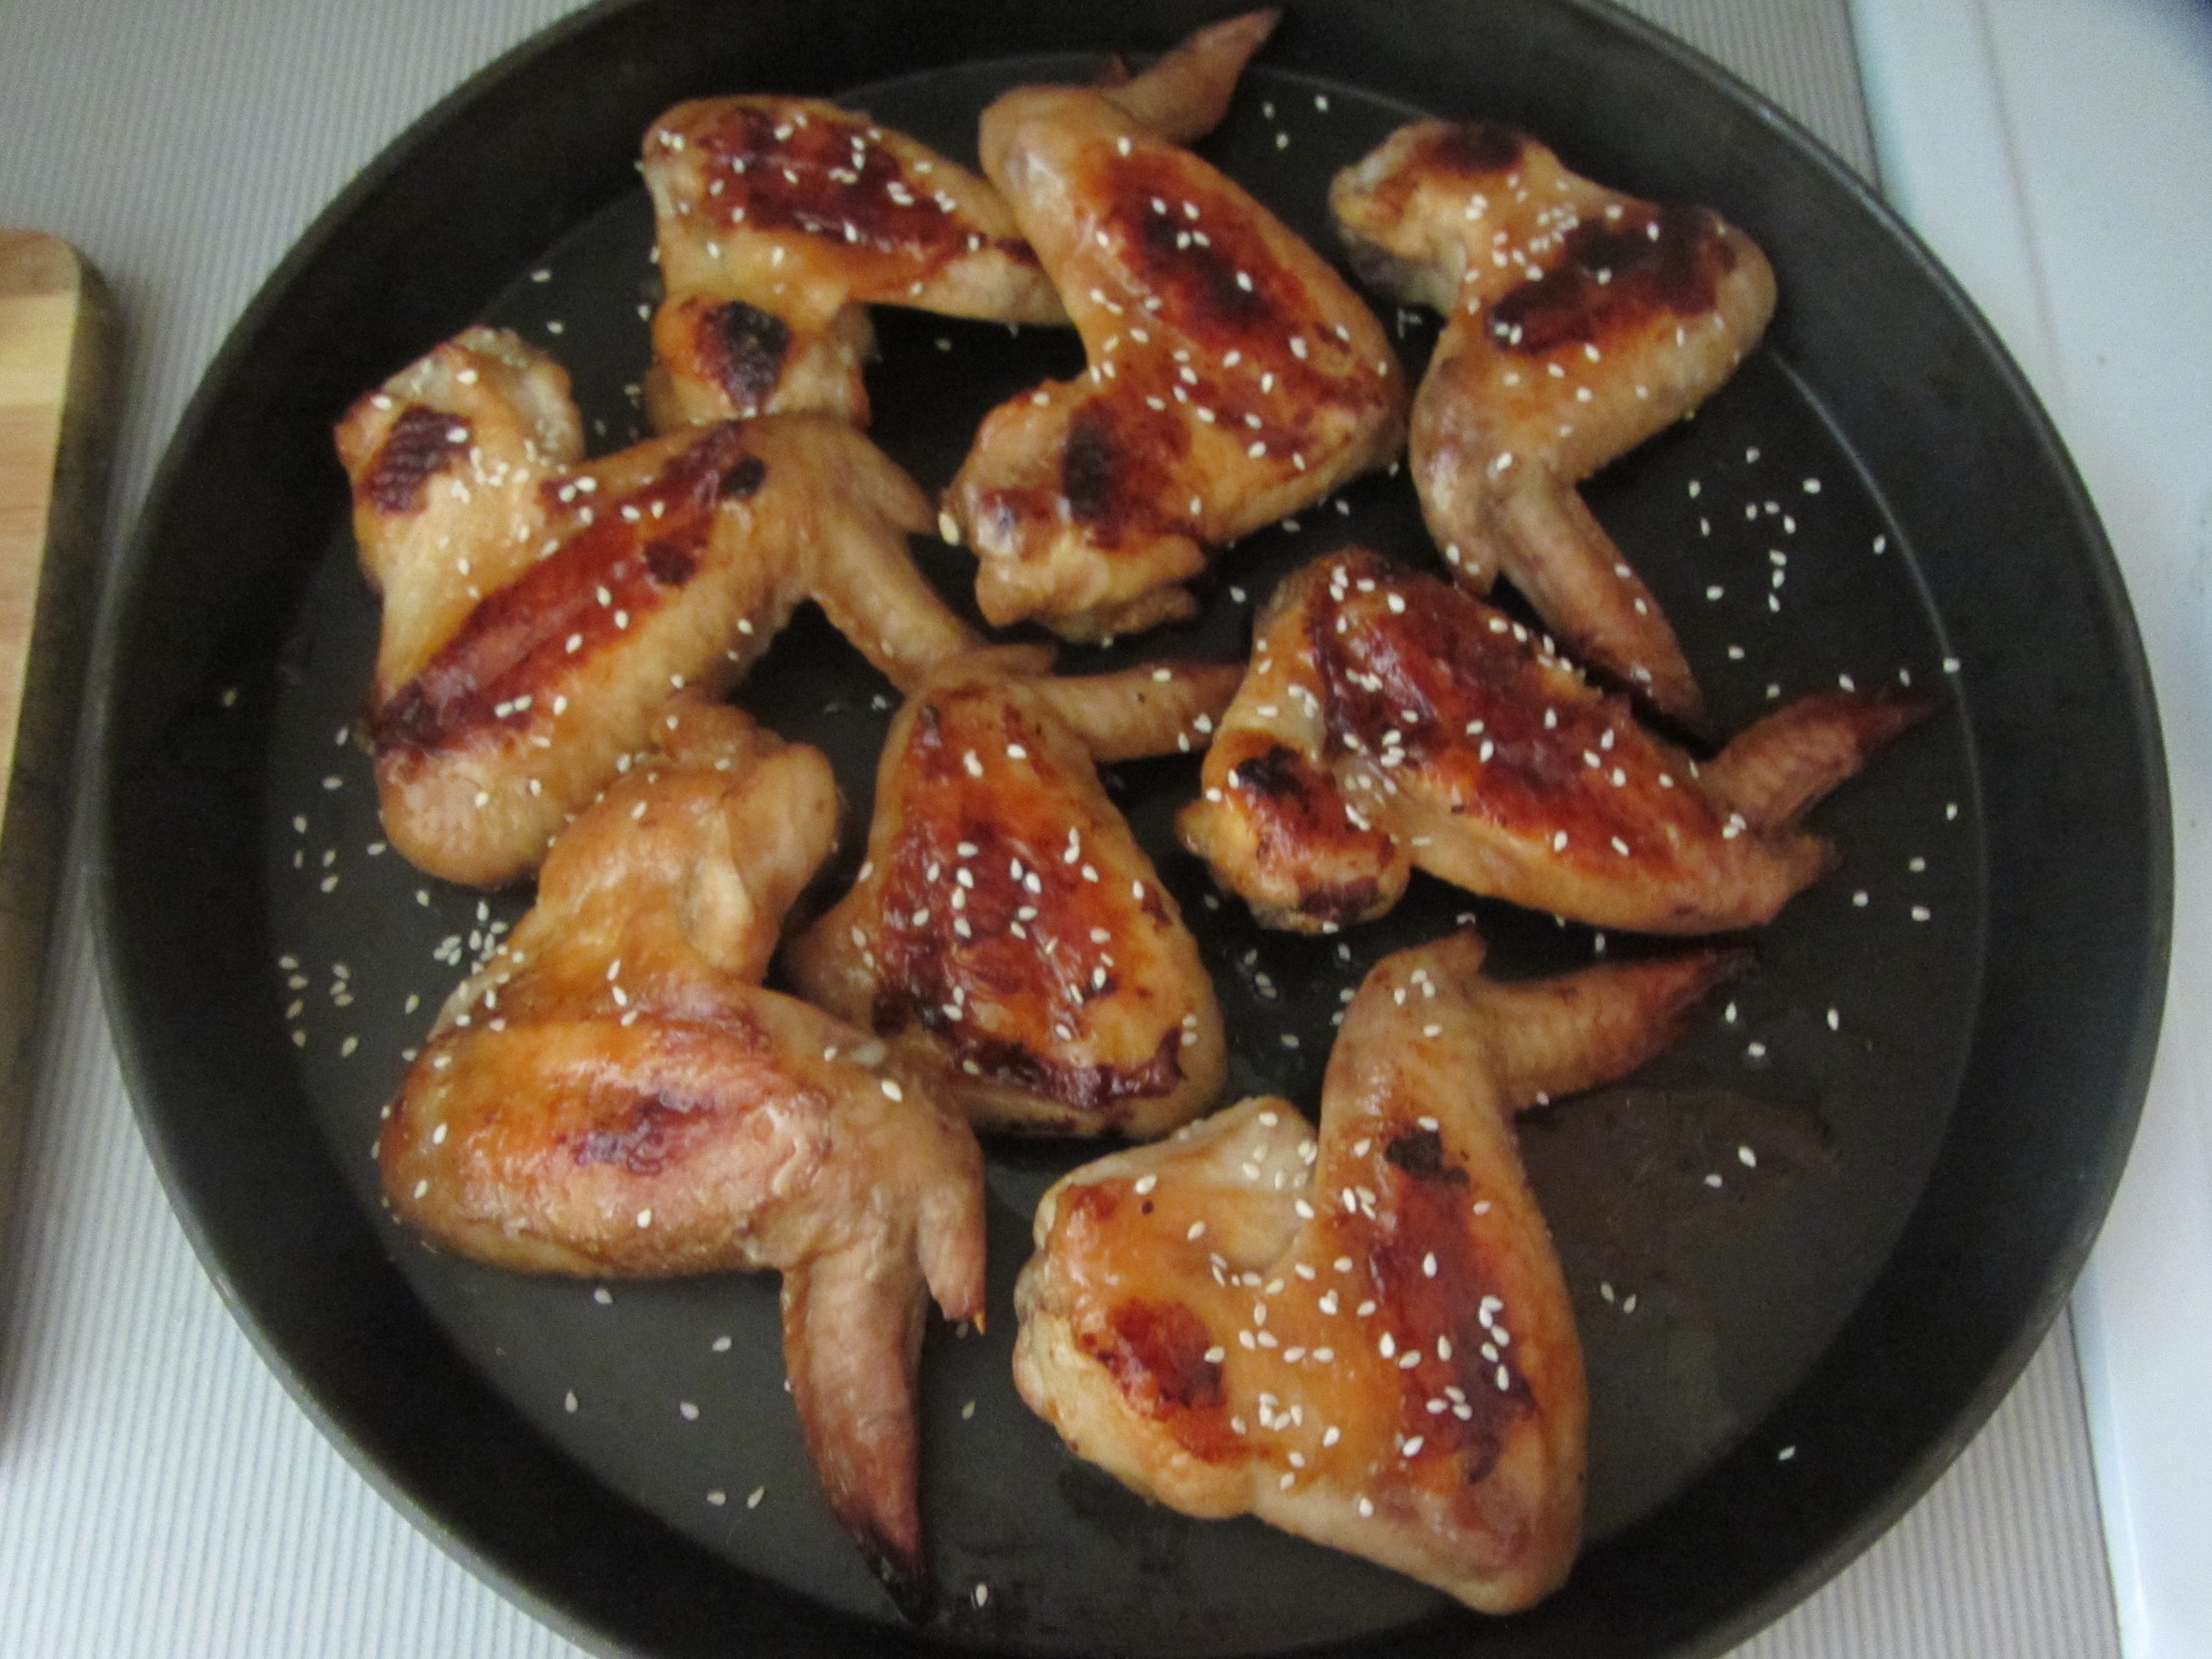 Куриные крылышки на сковороде рецепт с фото пошагово